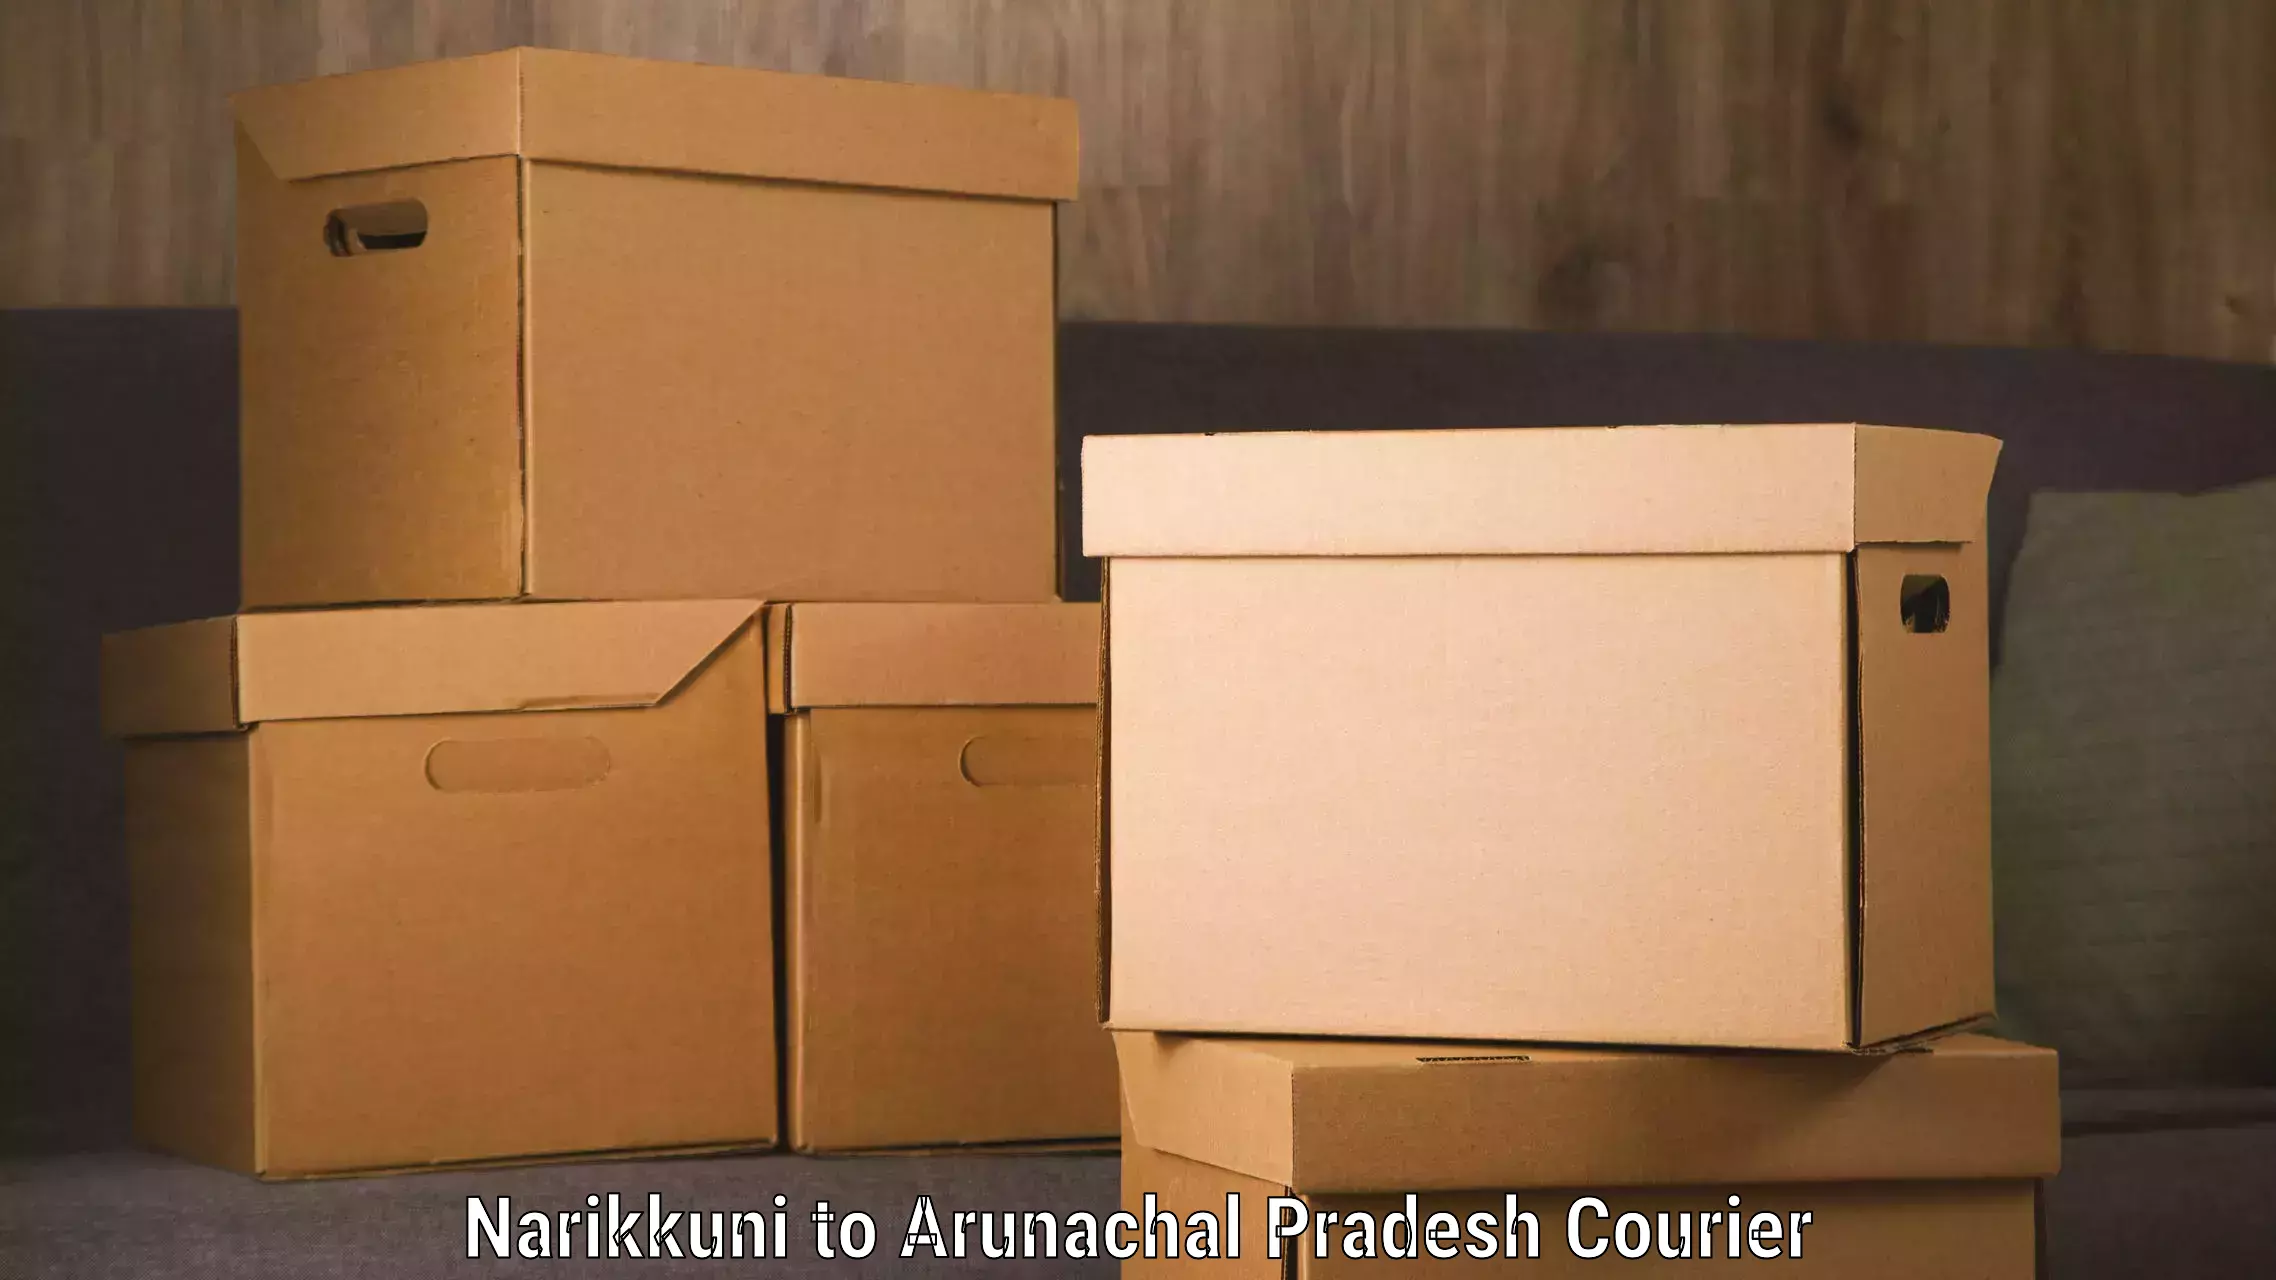 Efficient package consolidation Narikkuni to Arunachal Pradesh